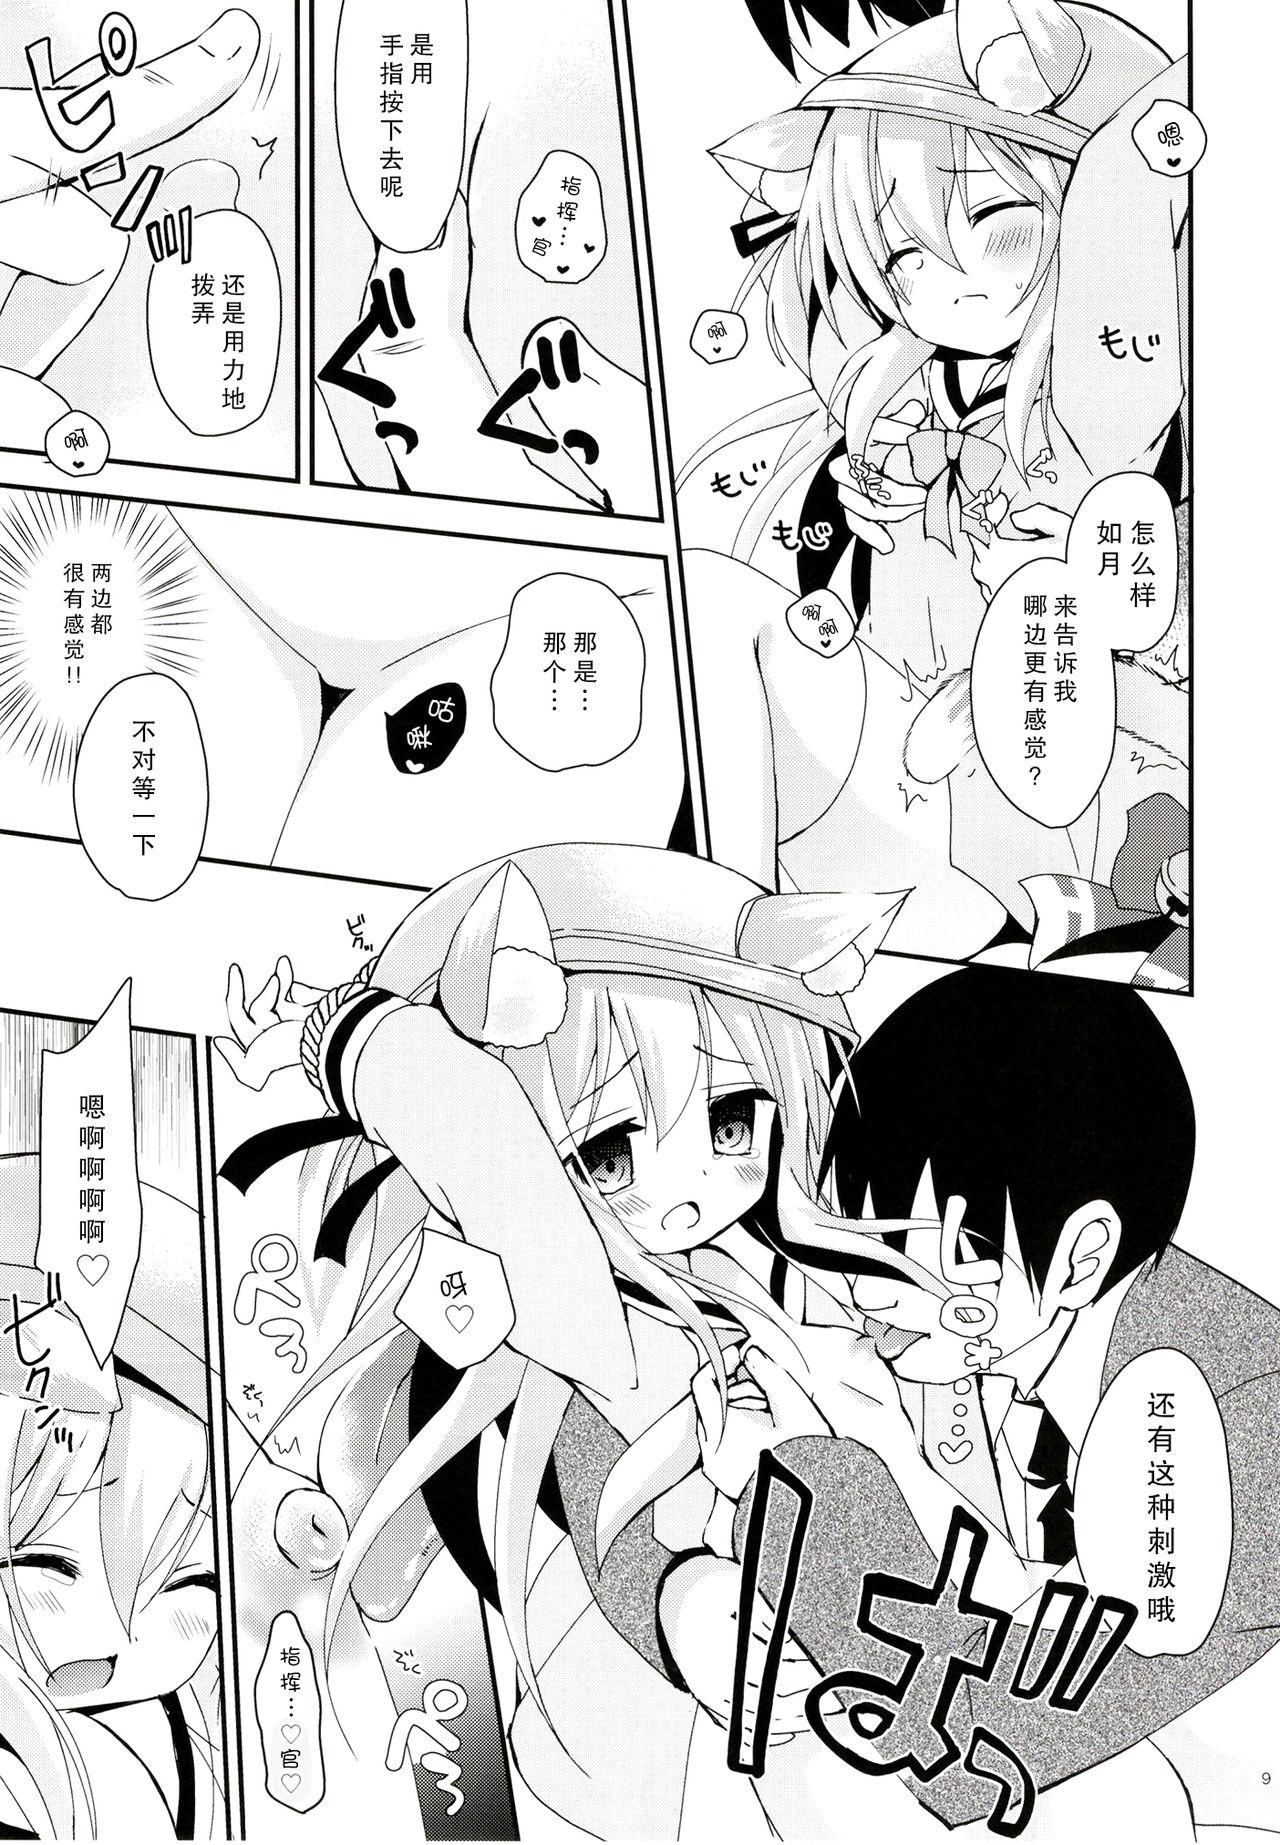 Pussylick Himitsu no Echi Echi Daikaishuu - Azur lane Pussy To Mouth - Page 12